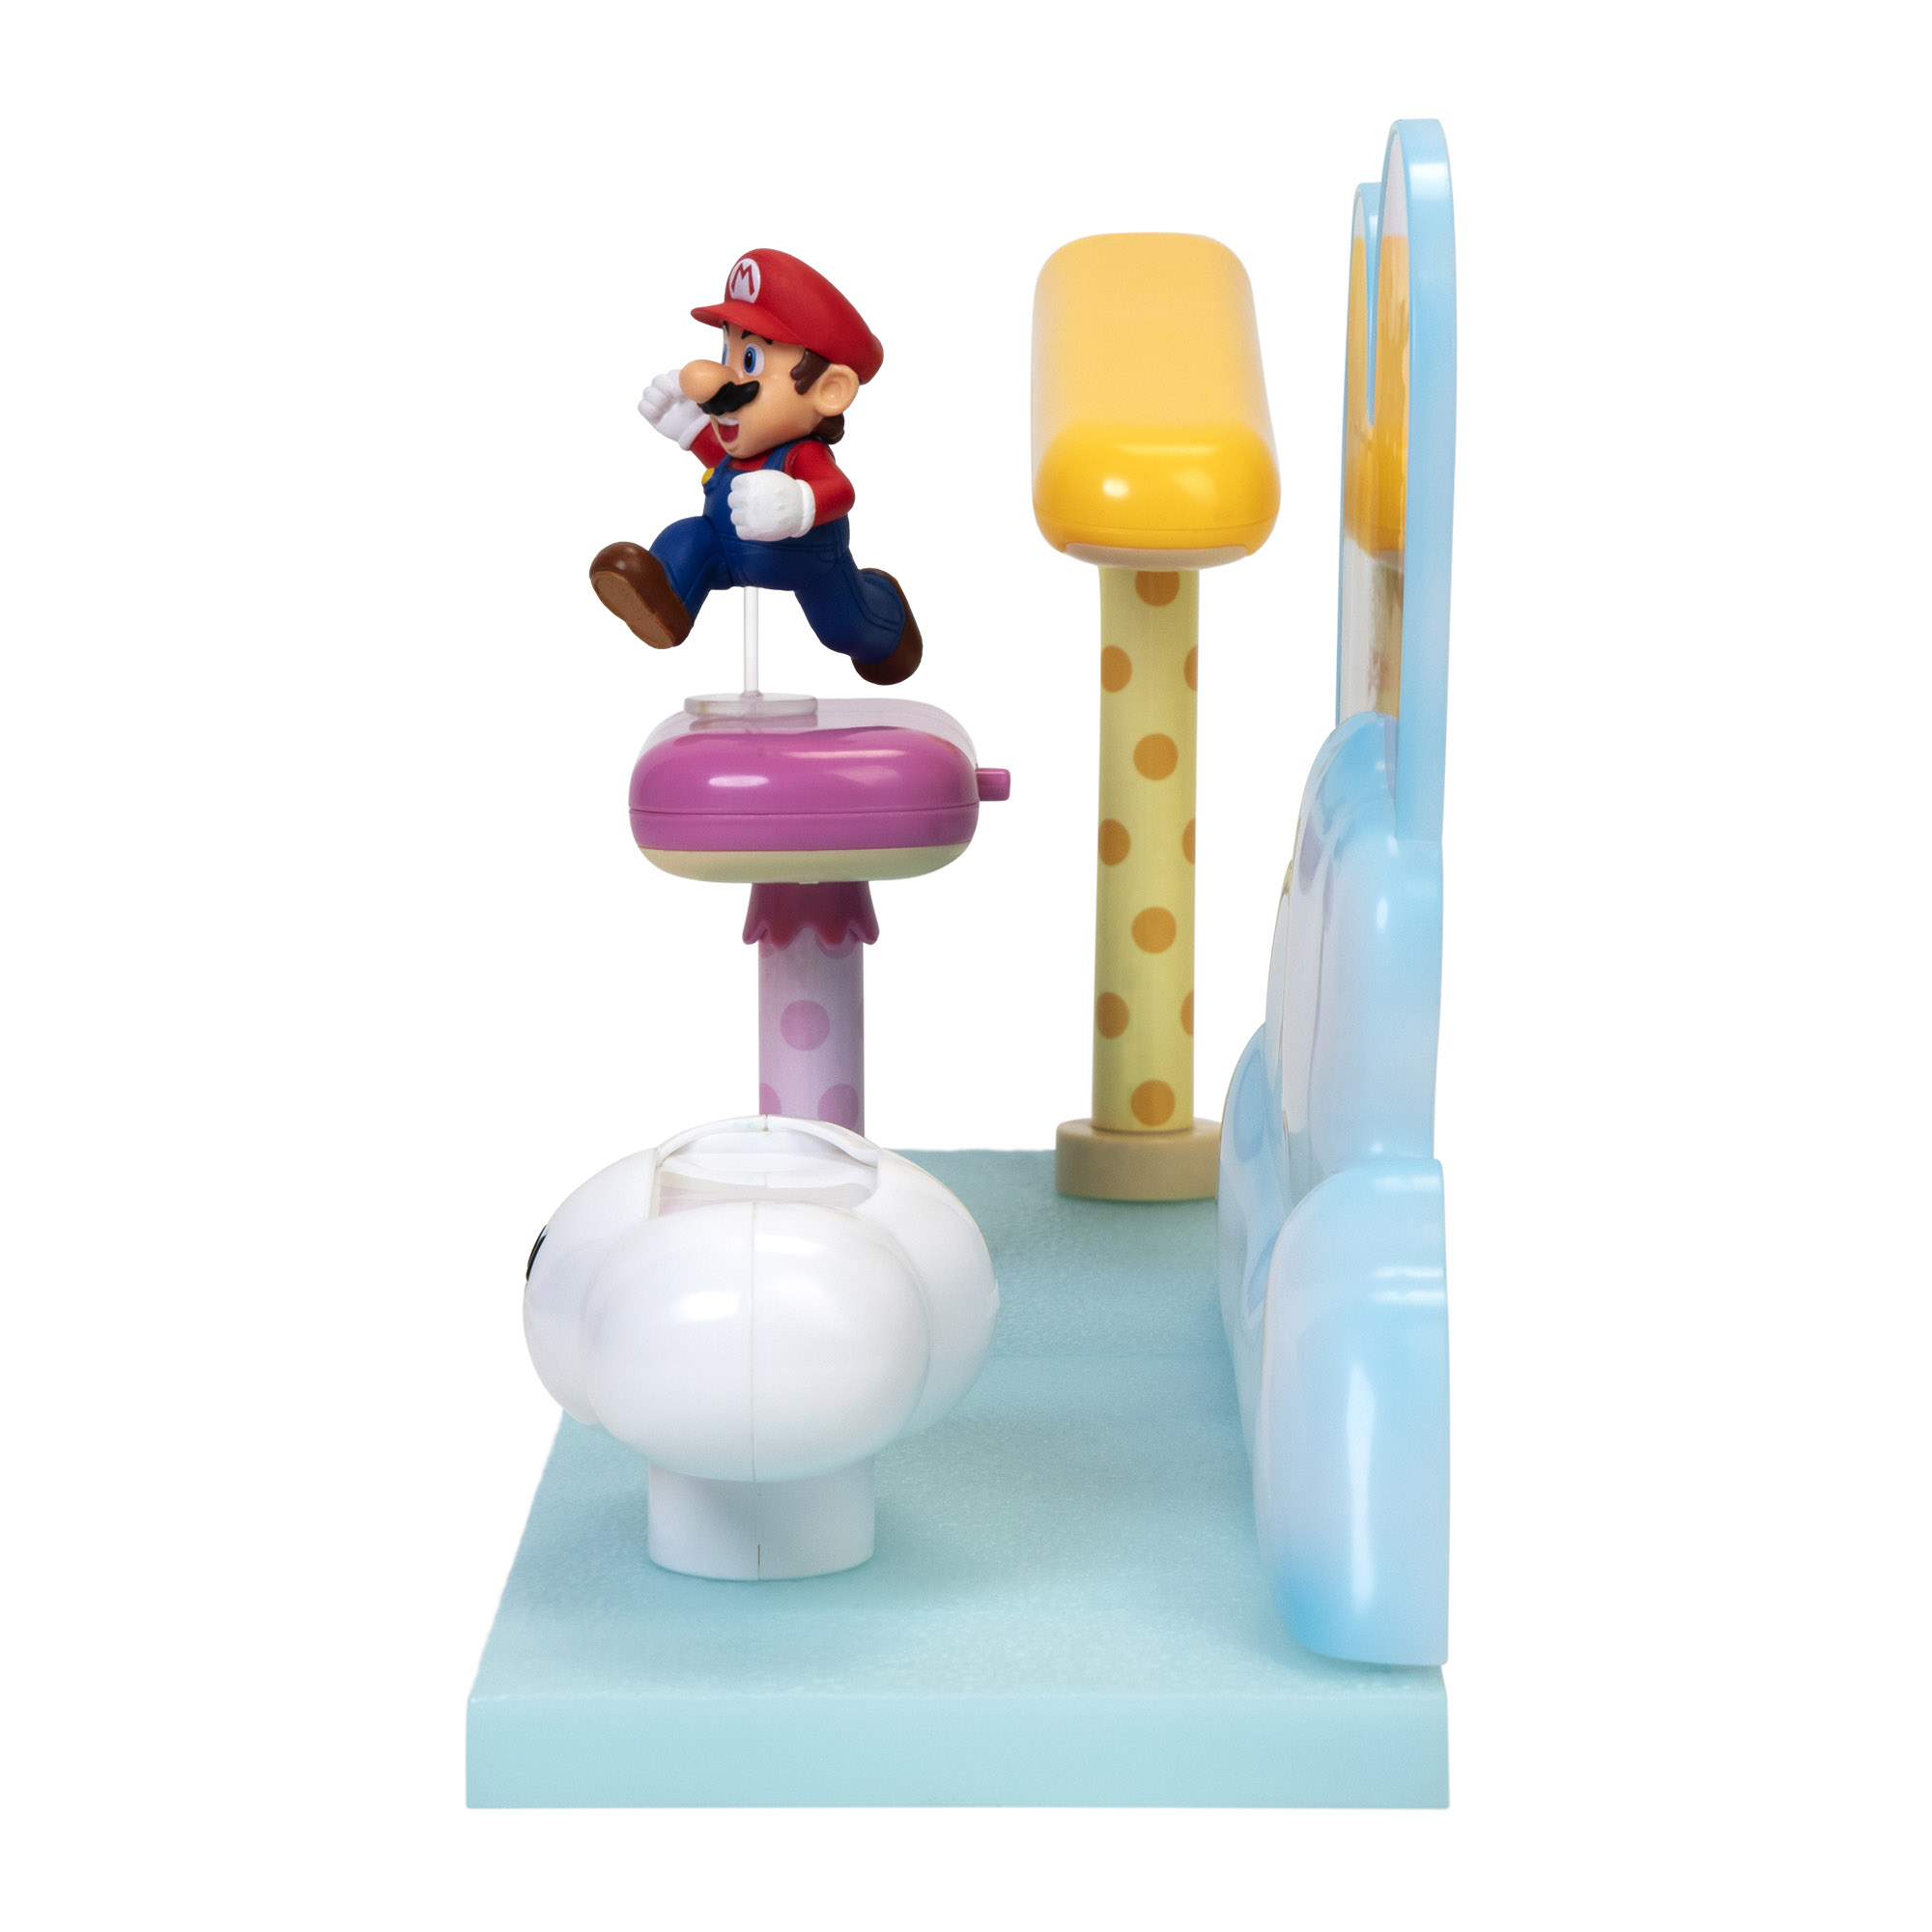 Super Mario playset Cloud con personaggo articolato 6 cm - Super Mario